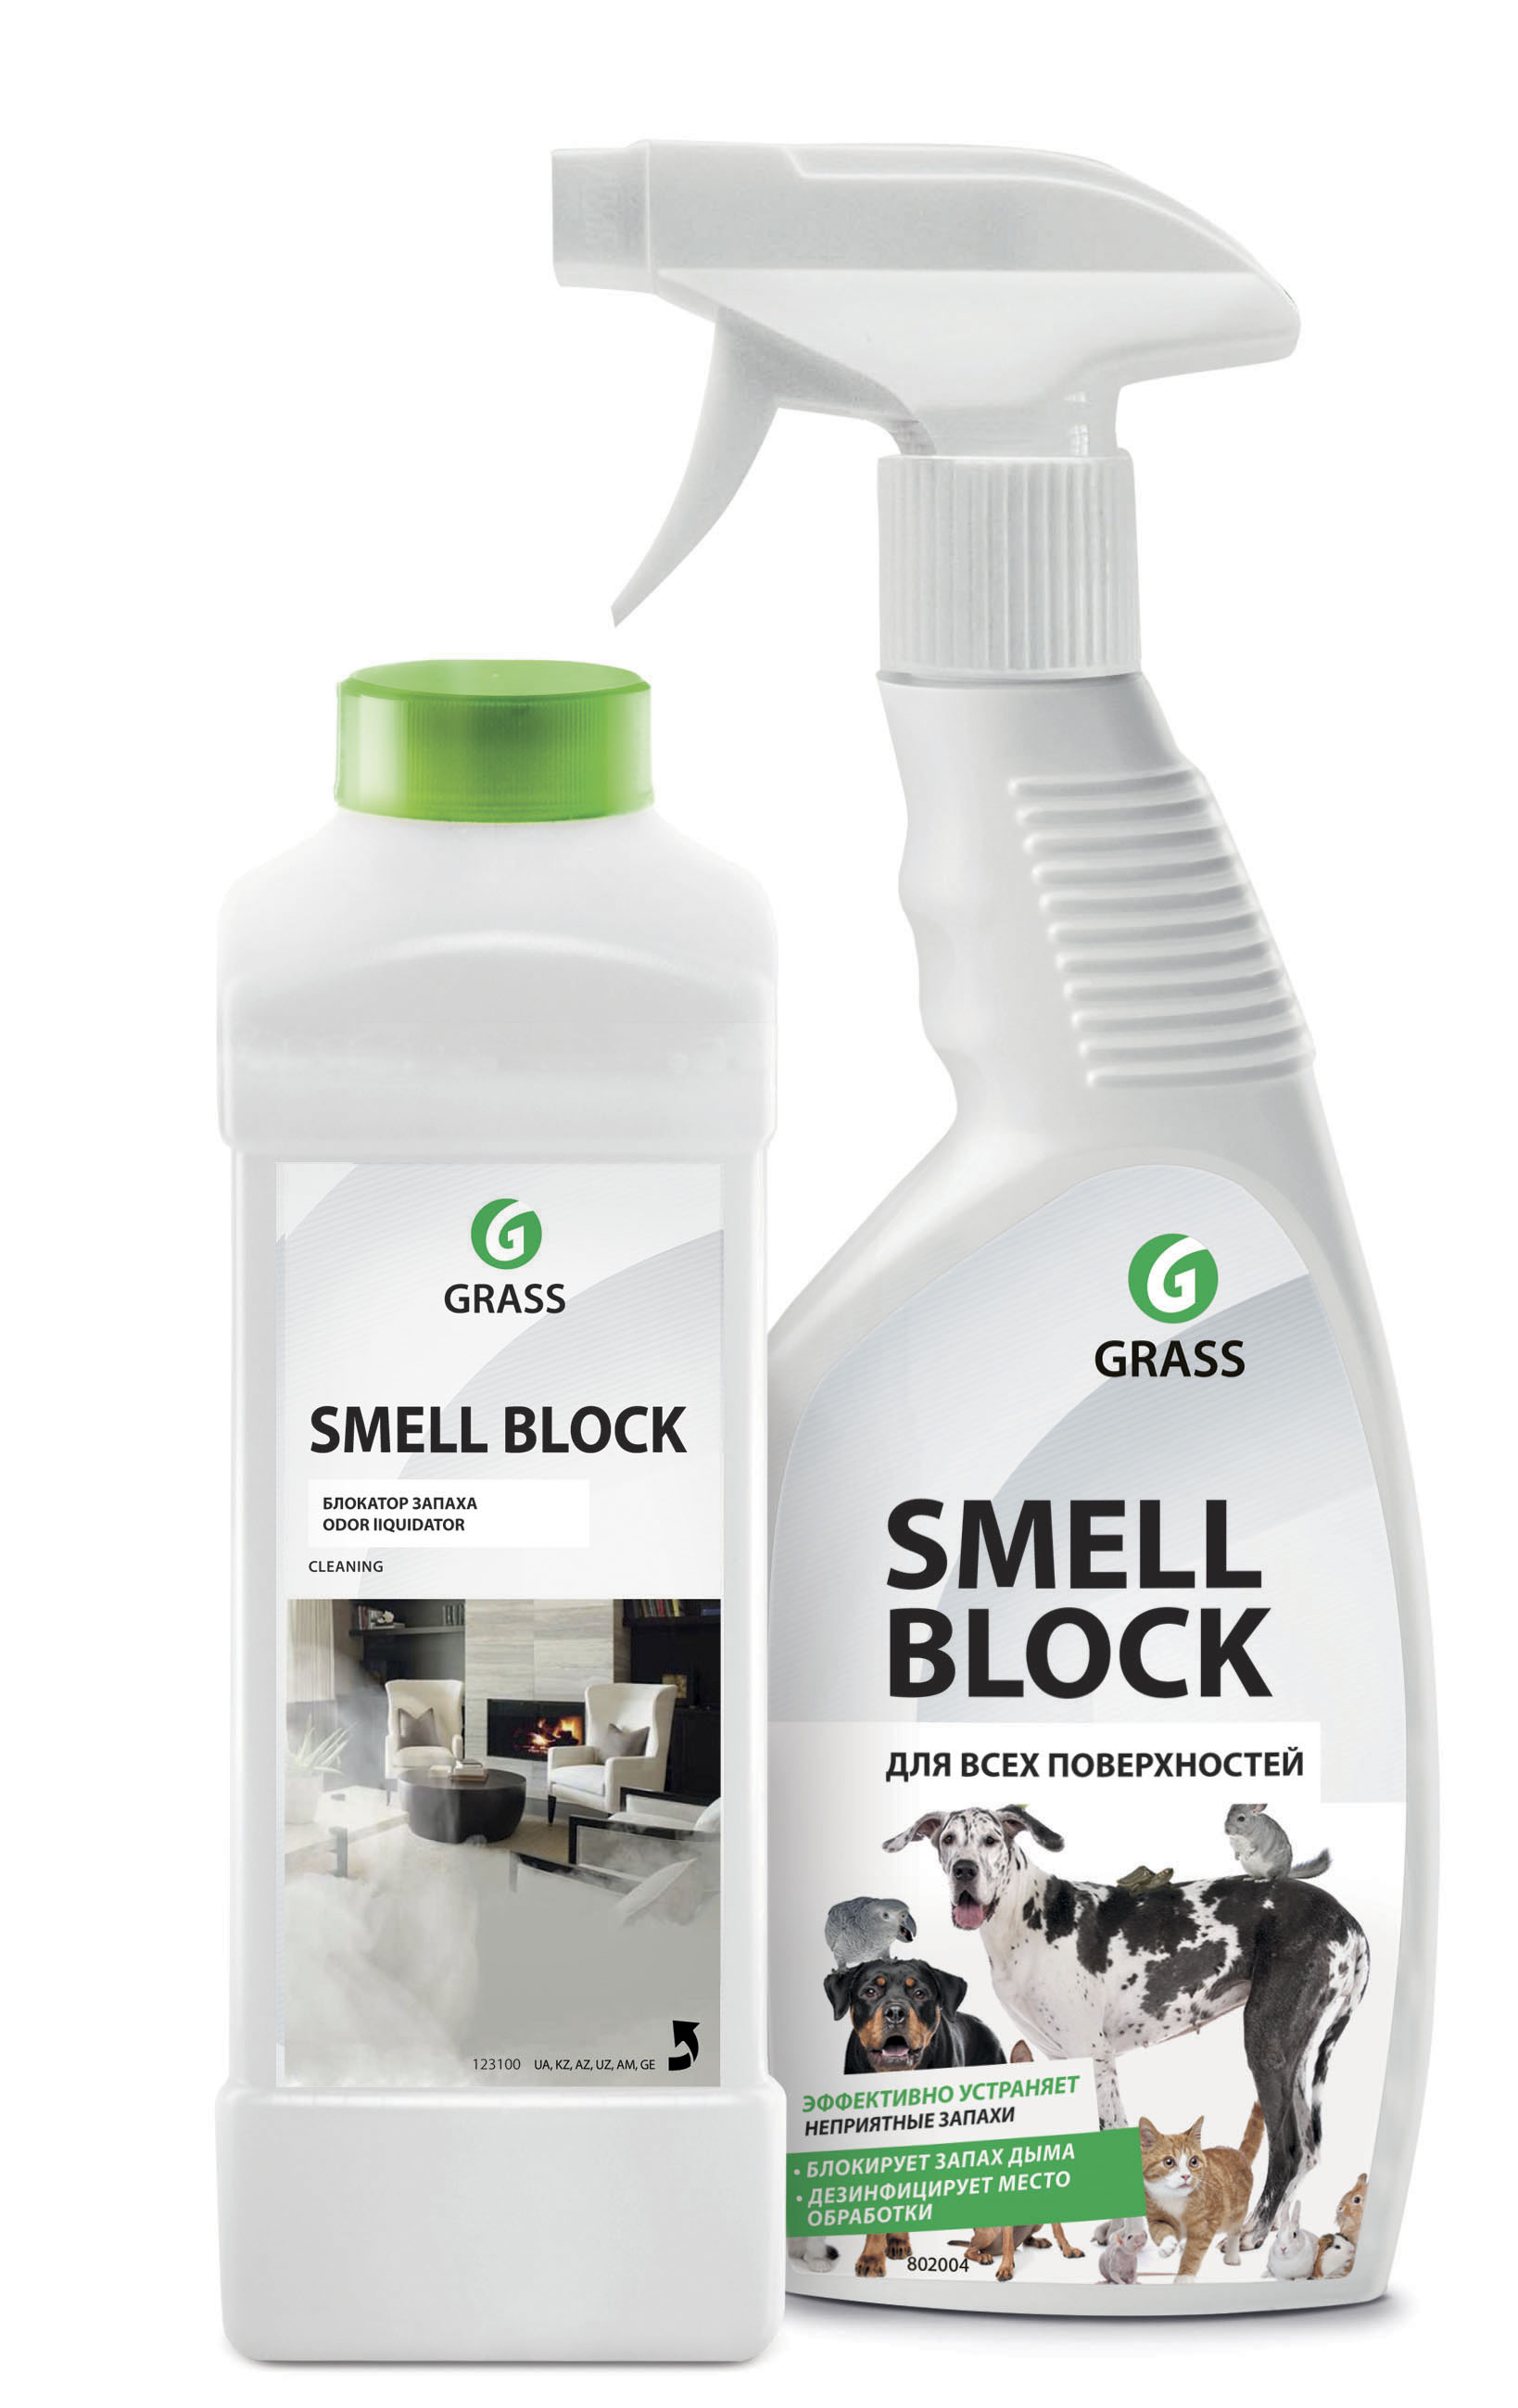   Smell Block 600  ()  ,,, GraSS